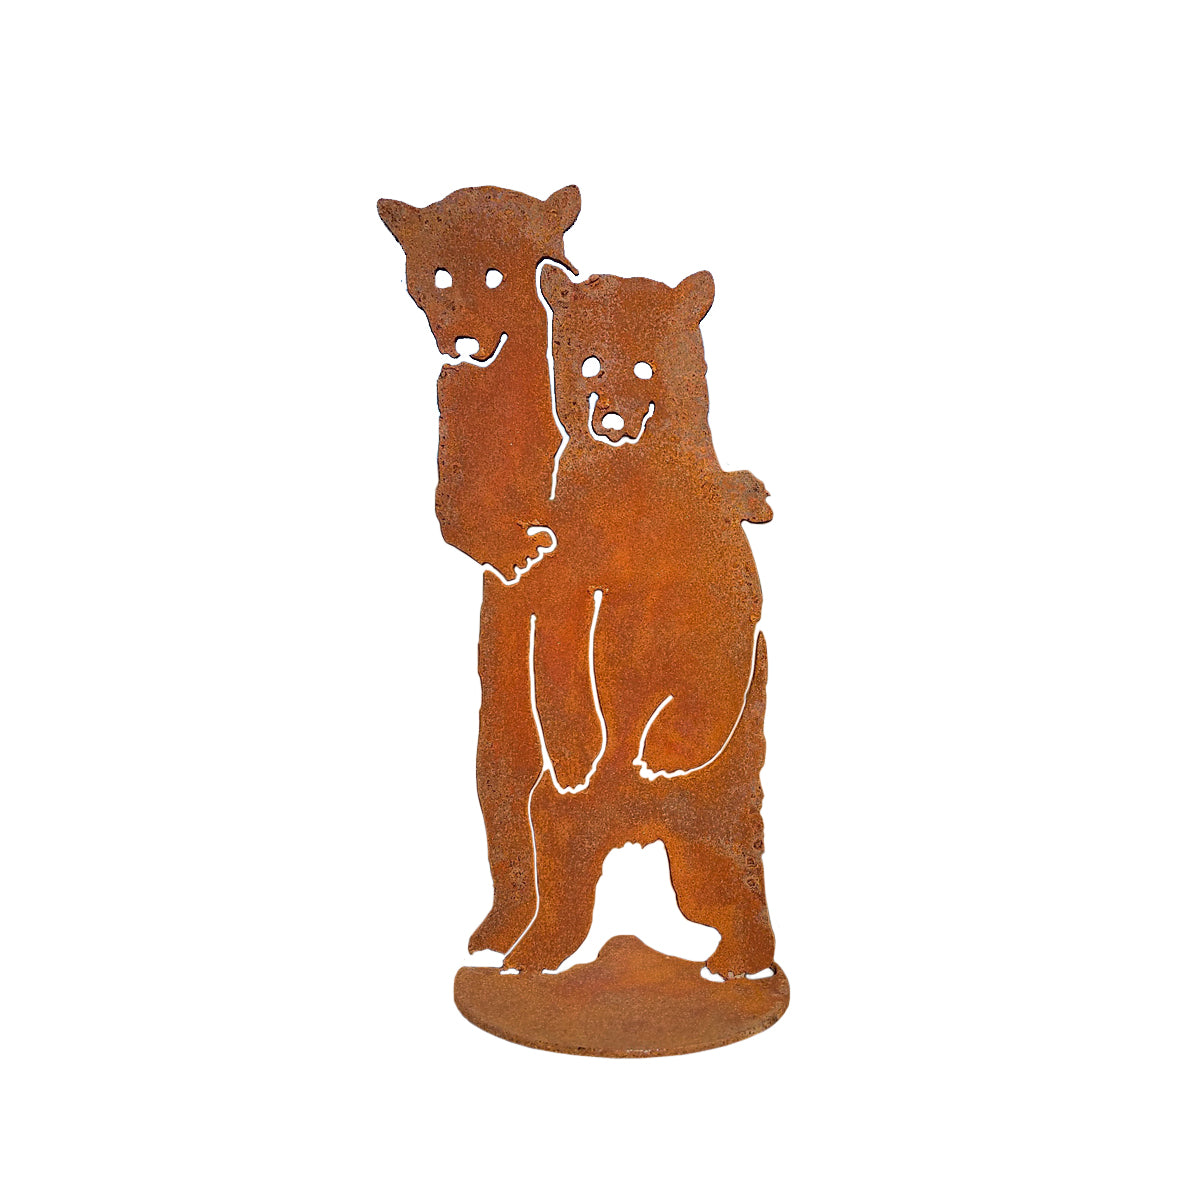 Extra Rusty Curious Bear Cubs Pop-Up